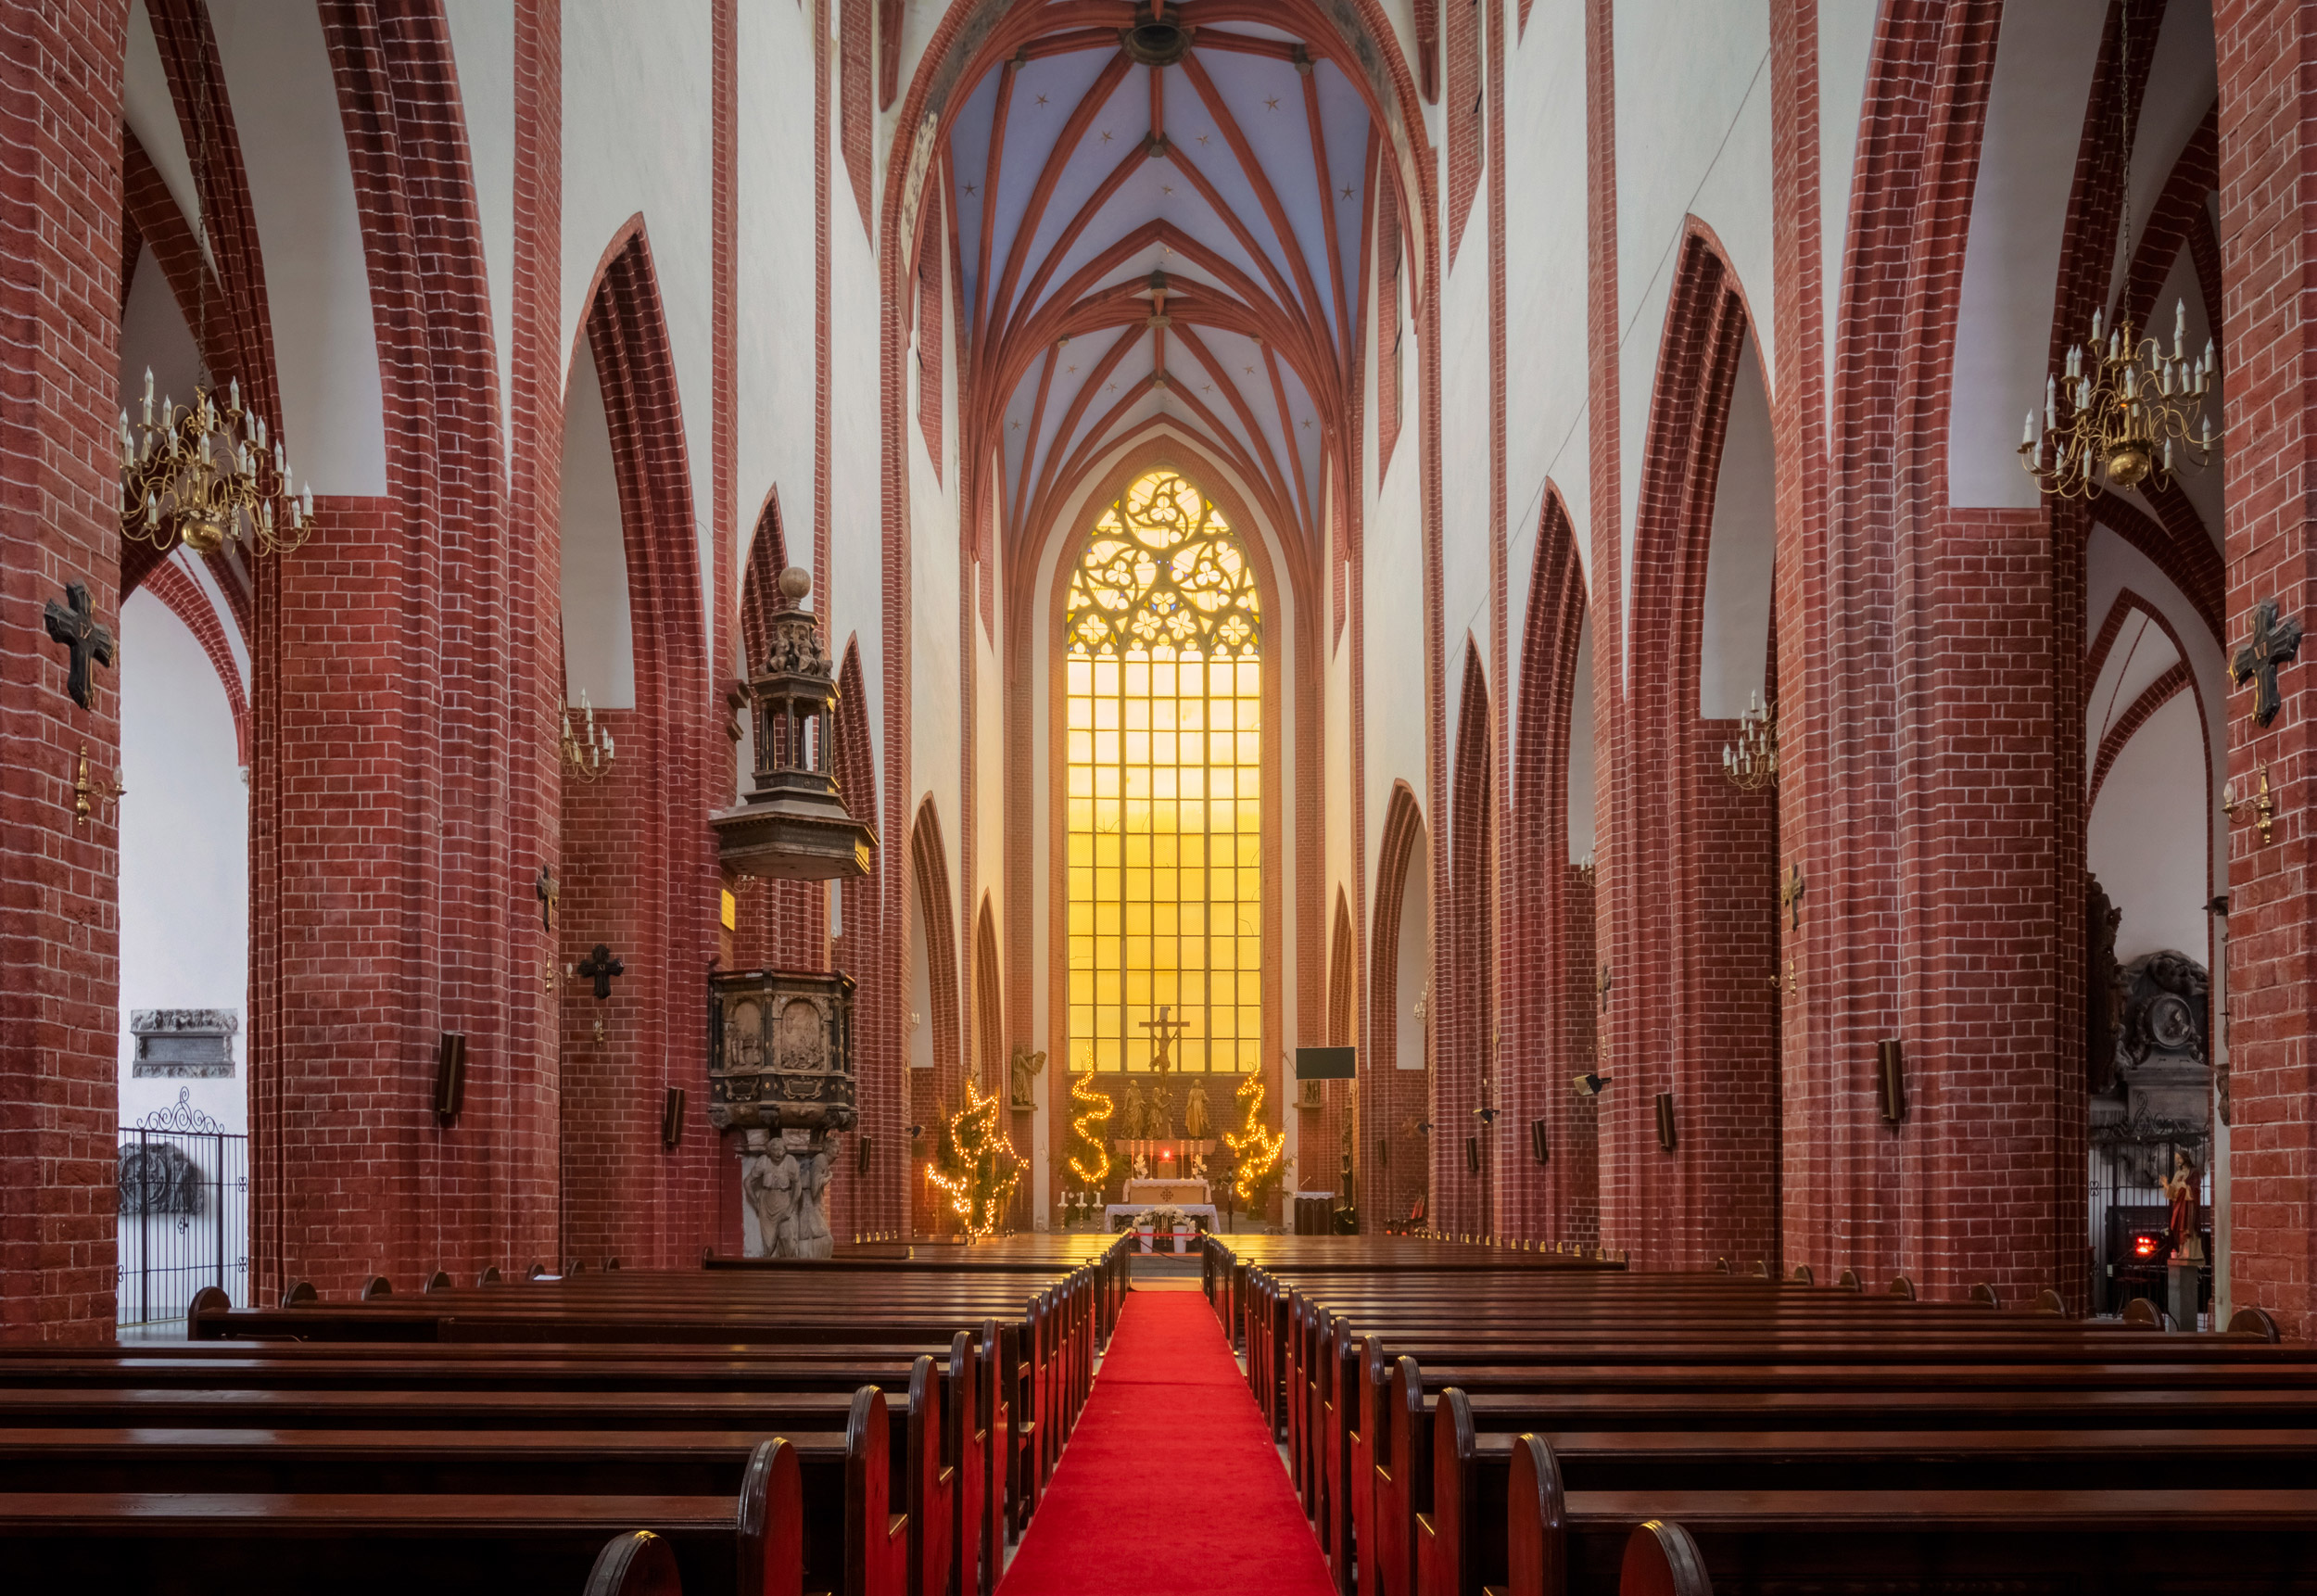 Beautiful interior of St Elizabeth Church in Wroclaw, Poland